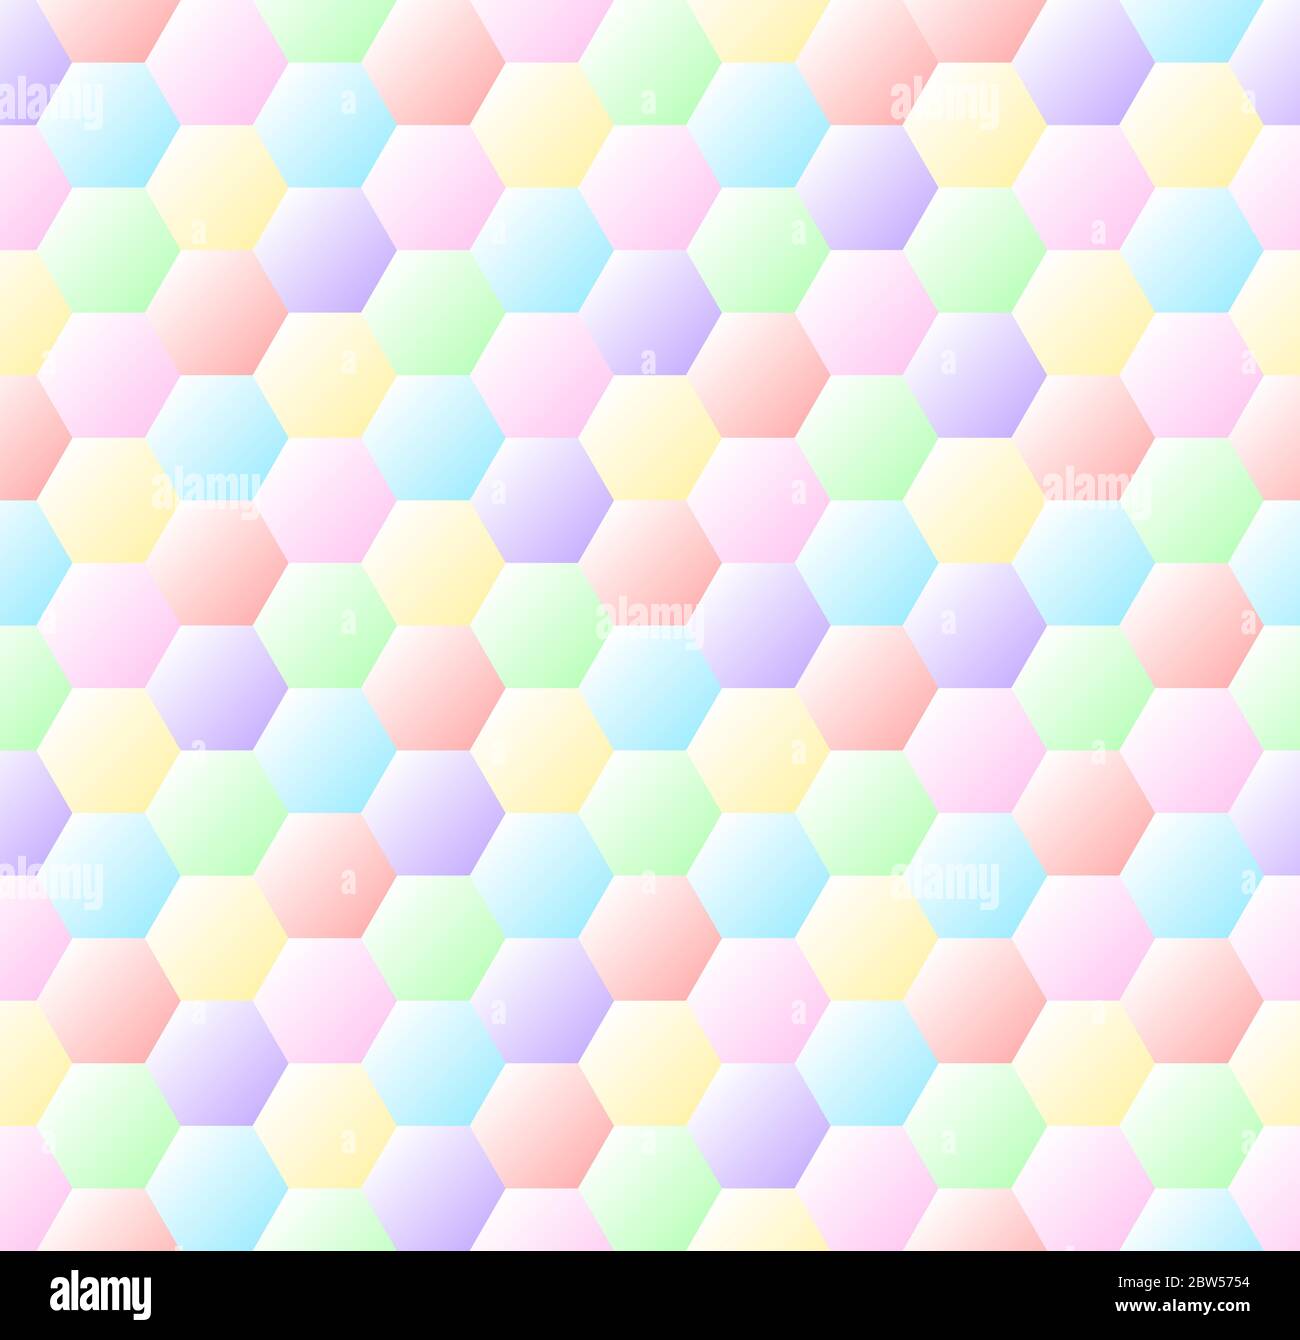 Nahtloses Wabenmuster in pastellfarbenen Regenbogenfarben. Abstrakter Hintergrund Hexagone Texturmuster. Sechsecke auf pastellfarbenen Gradienten Stock Vektor